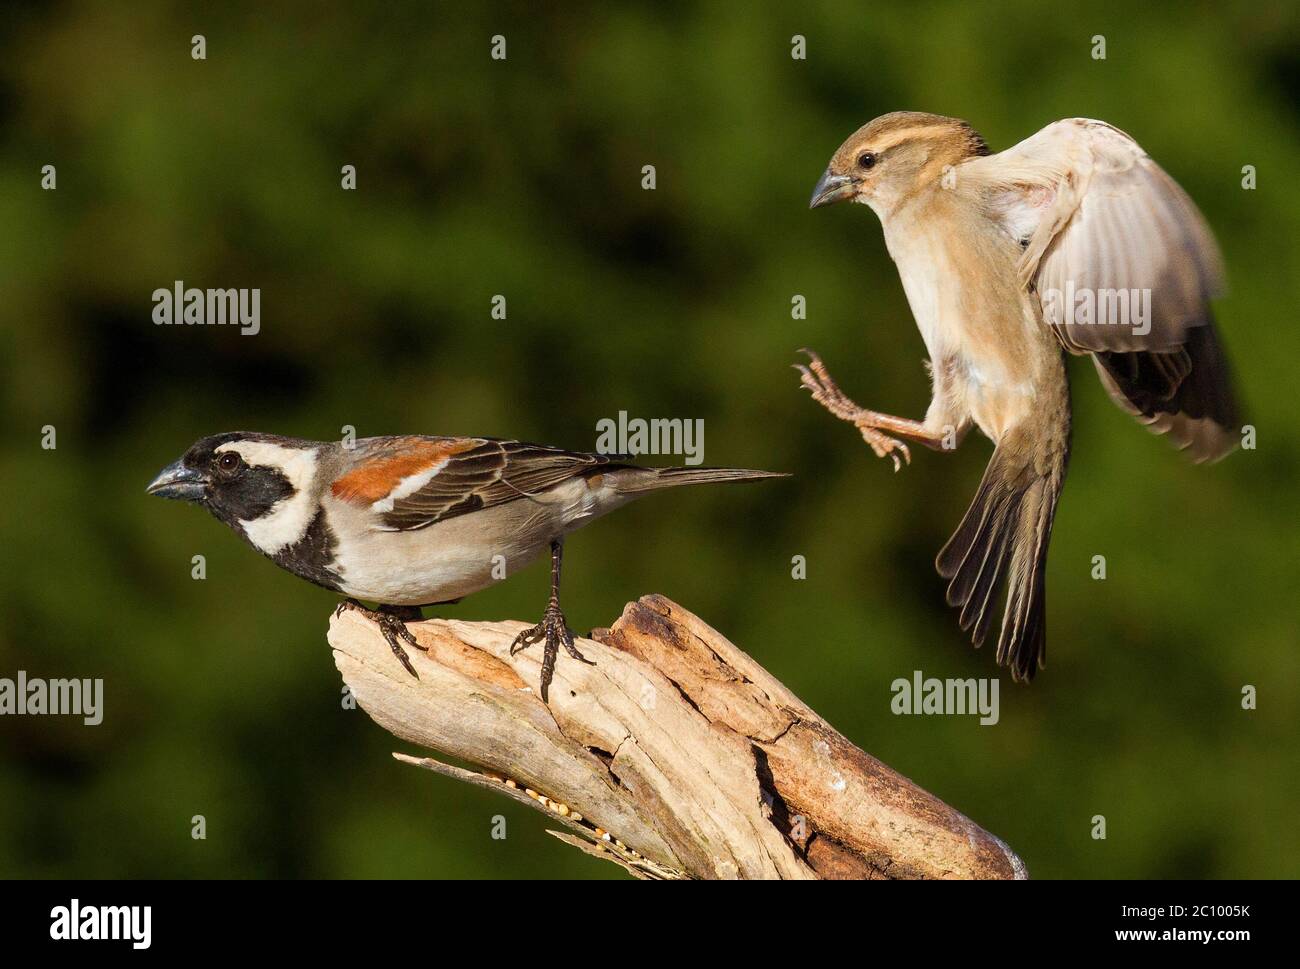 garden bird interaction Stock Photo